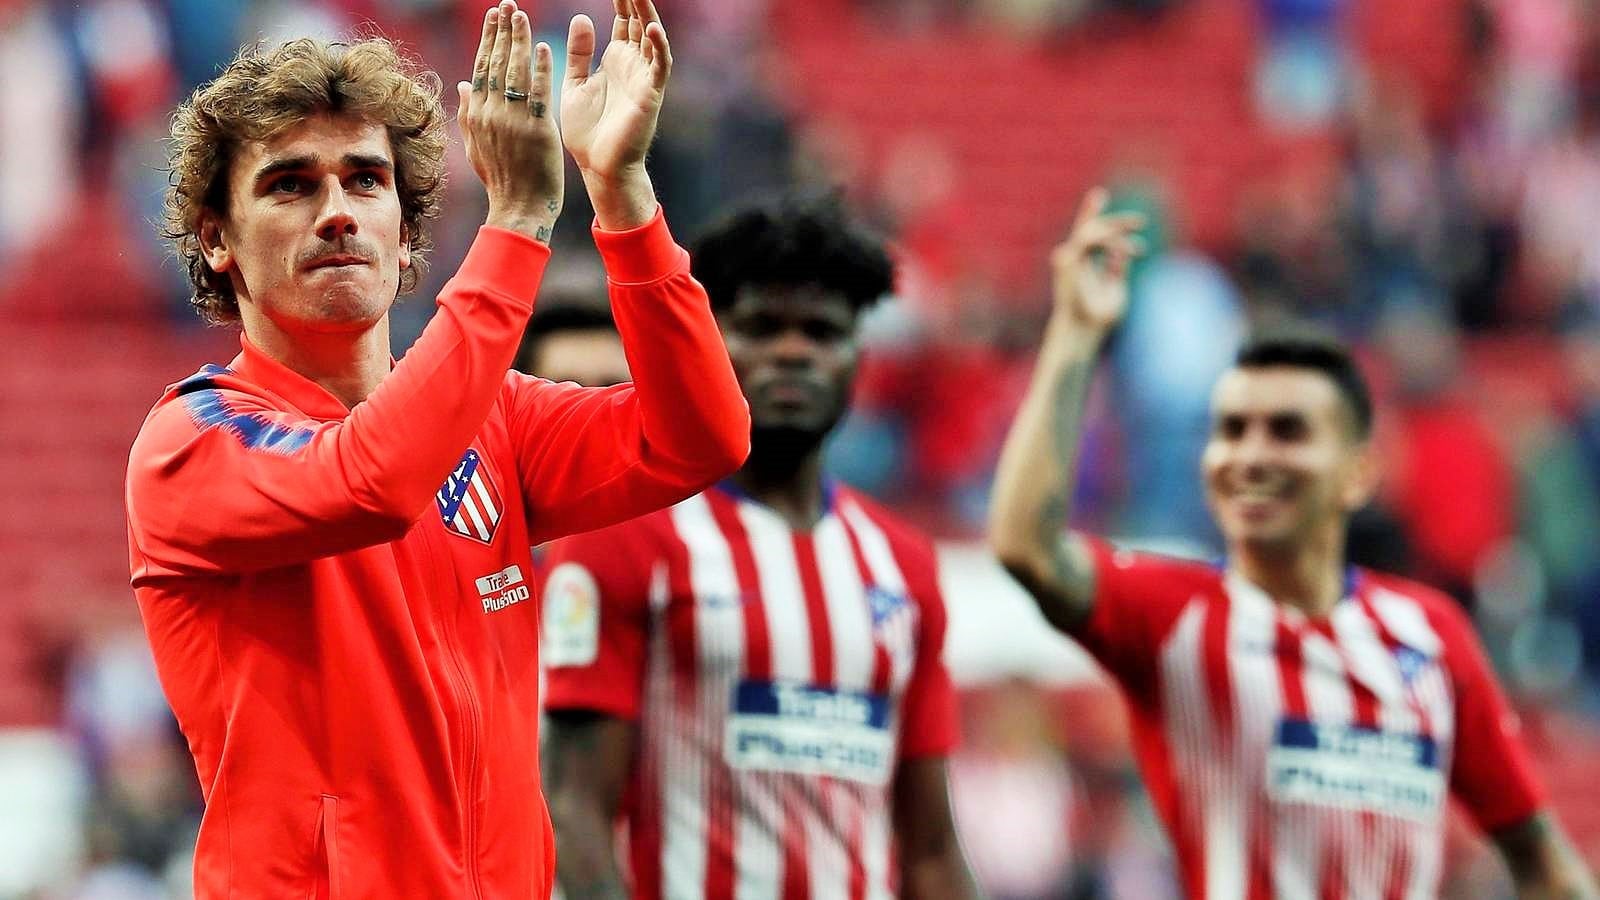 Antoine Griezamann comunicó a directivos de Atlético Madrid su salida del club